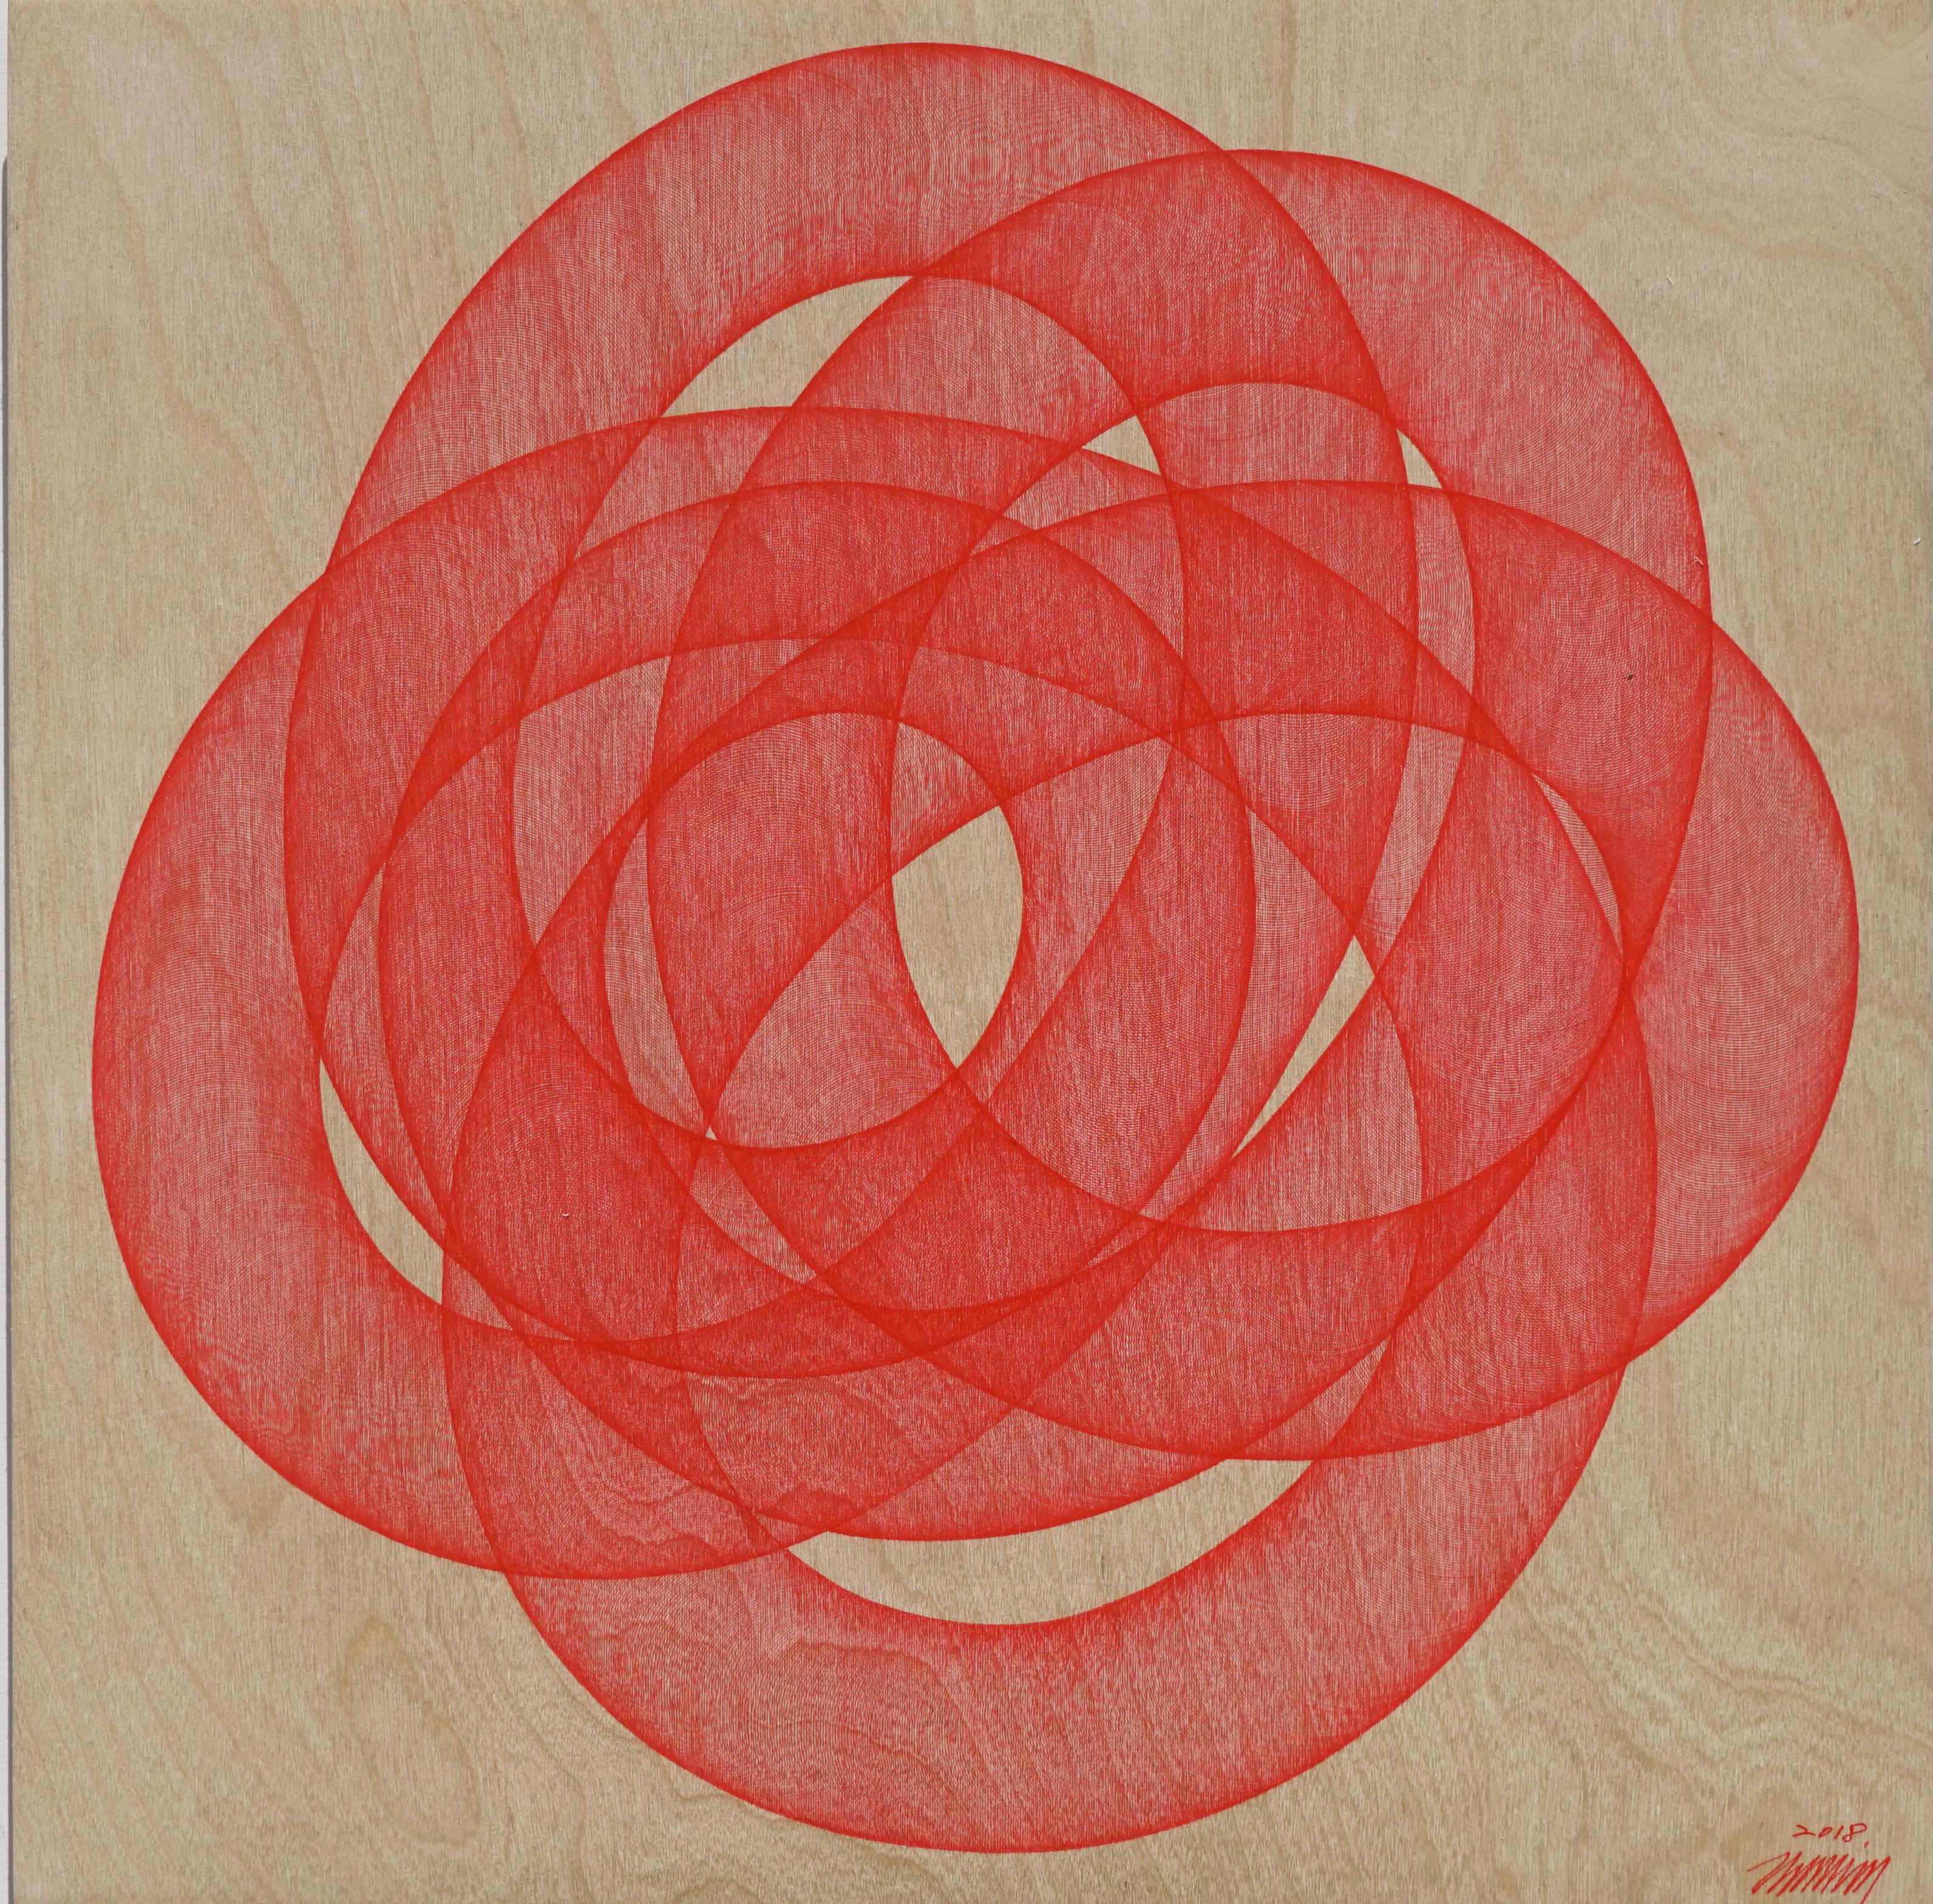 Infinity #54 (op art geschwungene monochrome rote Federzeichnung Holz detailliert orientalisch) 